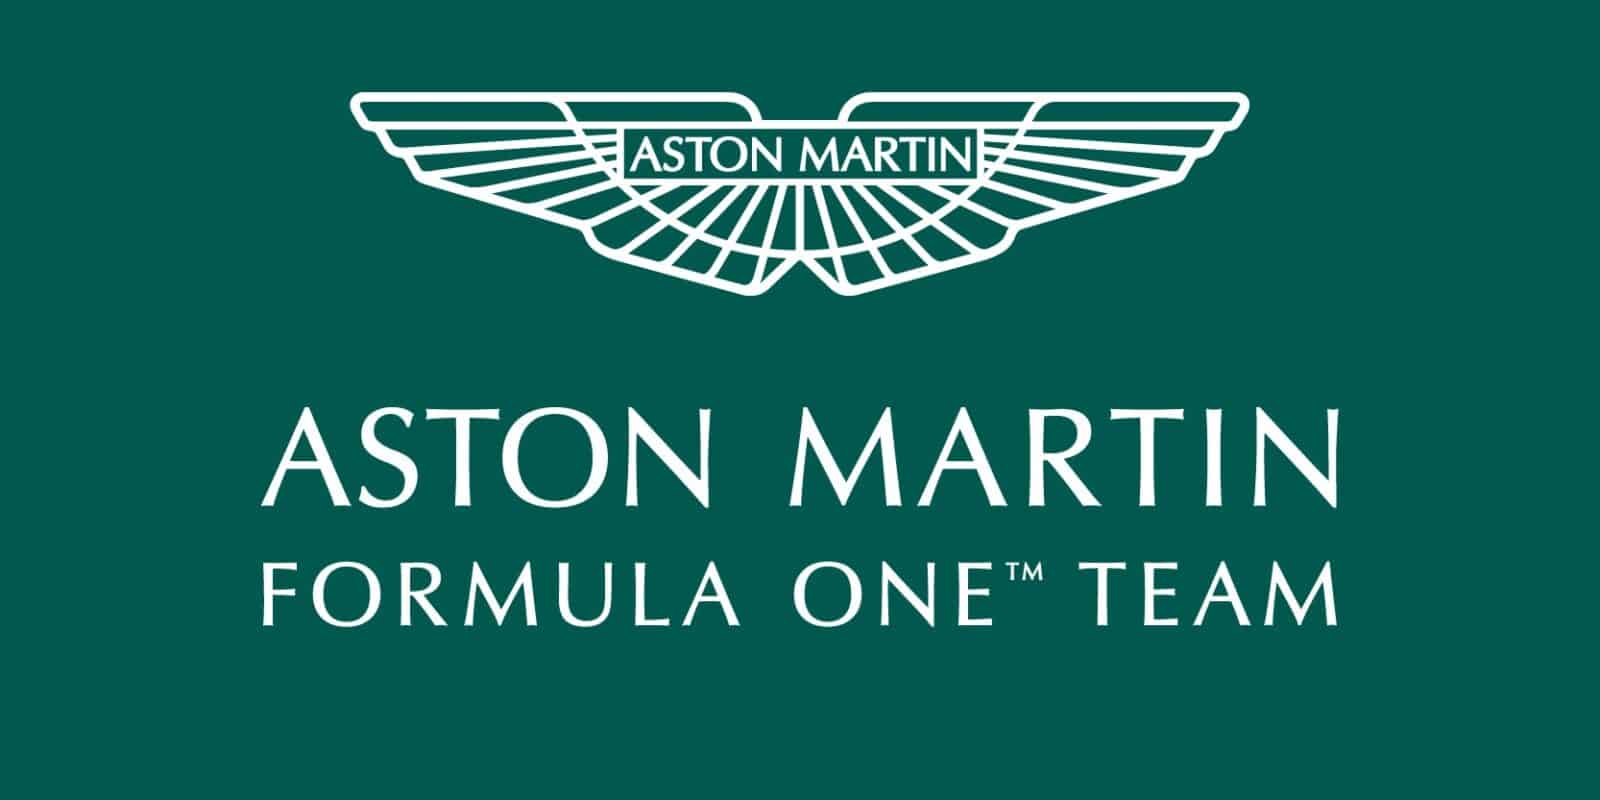 Aston Martin plánuje odhalit svůj vůz v únoru